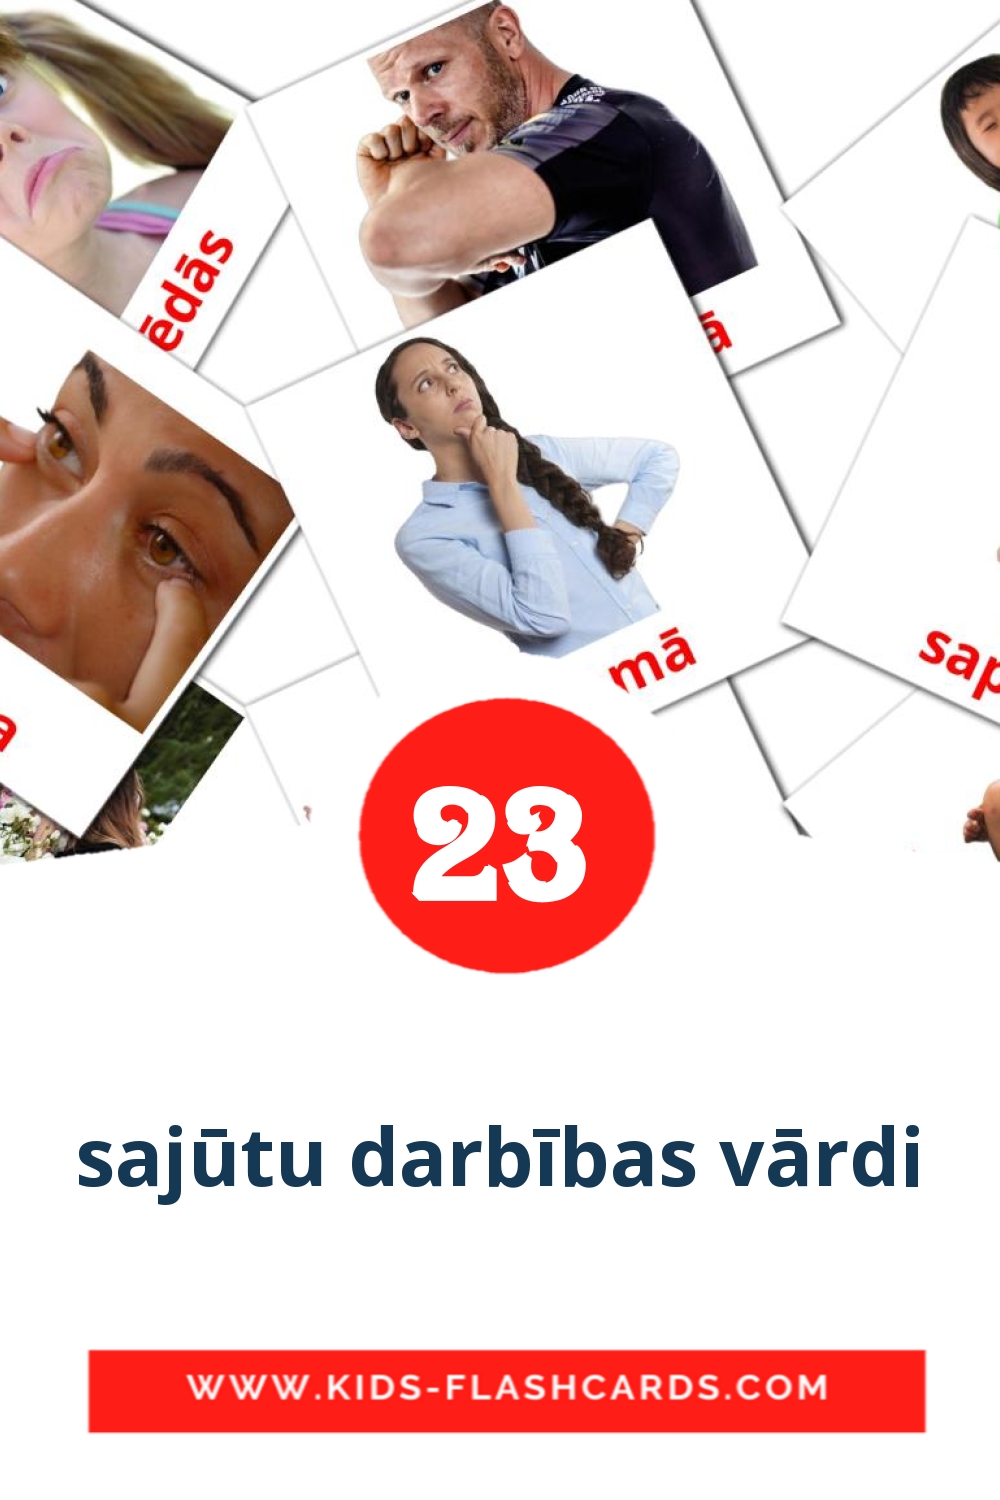 23 carte illustrate di sajūtu darbības vārdi per la scuola materna in lettone